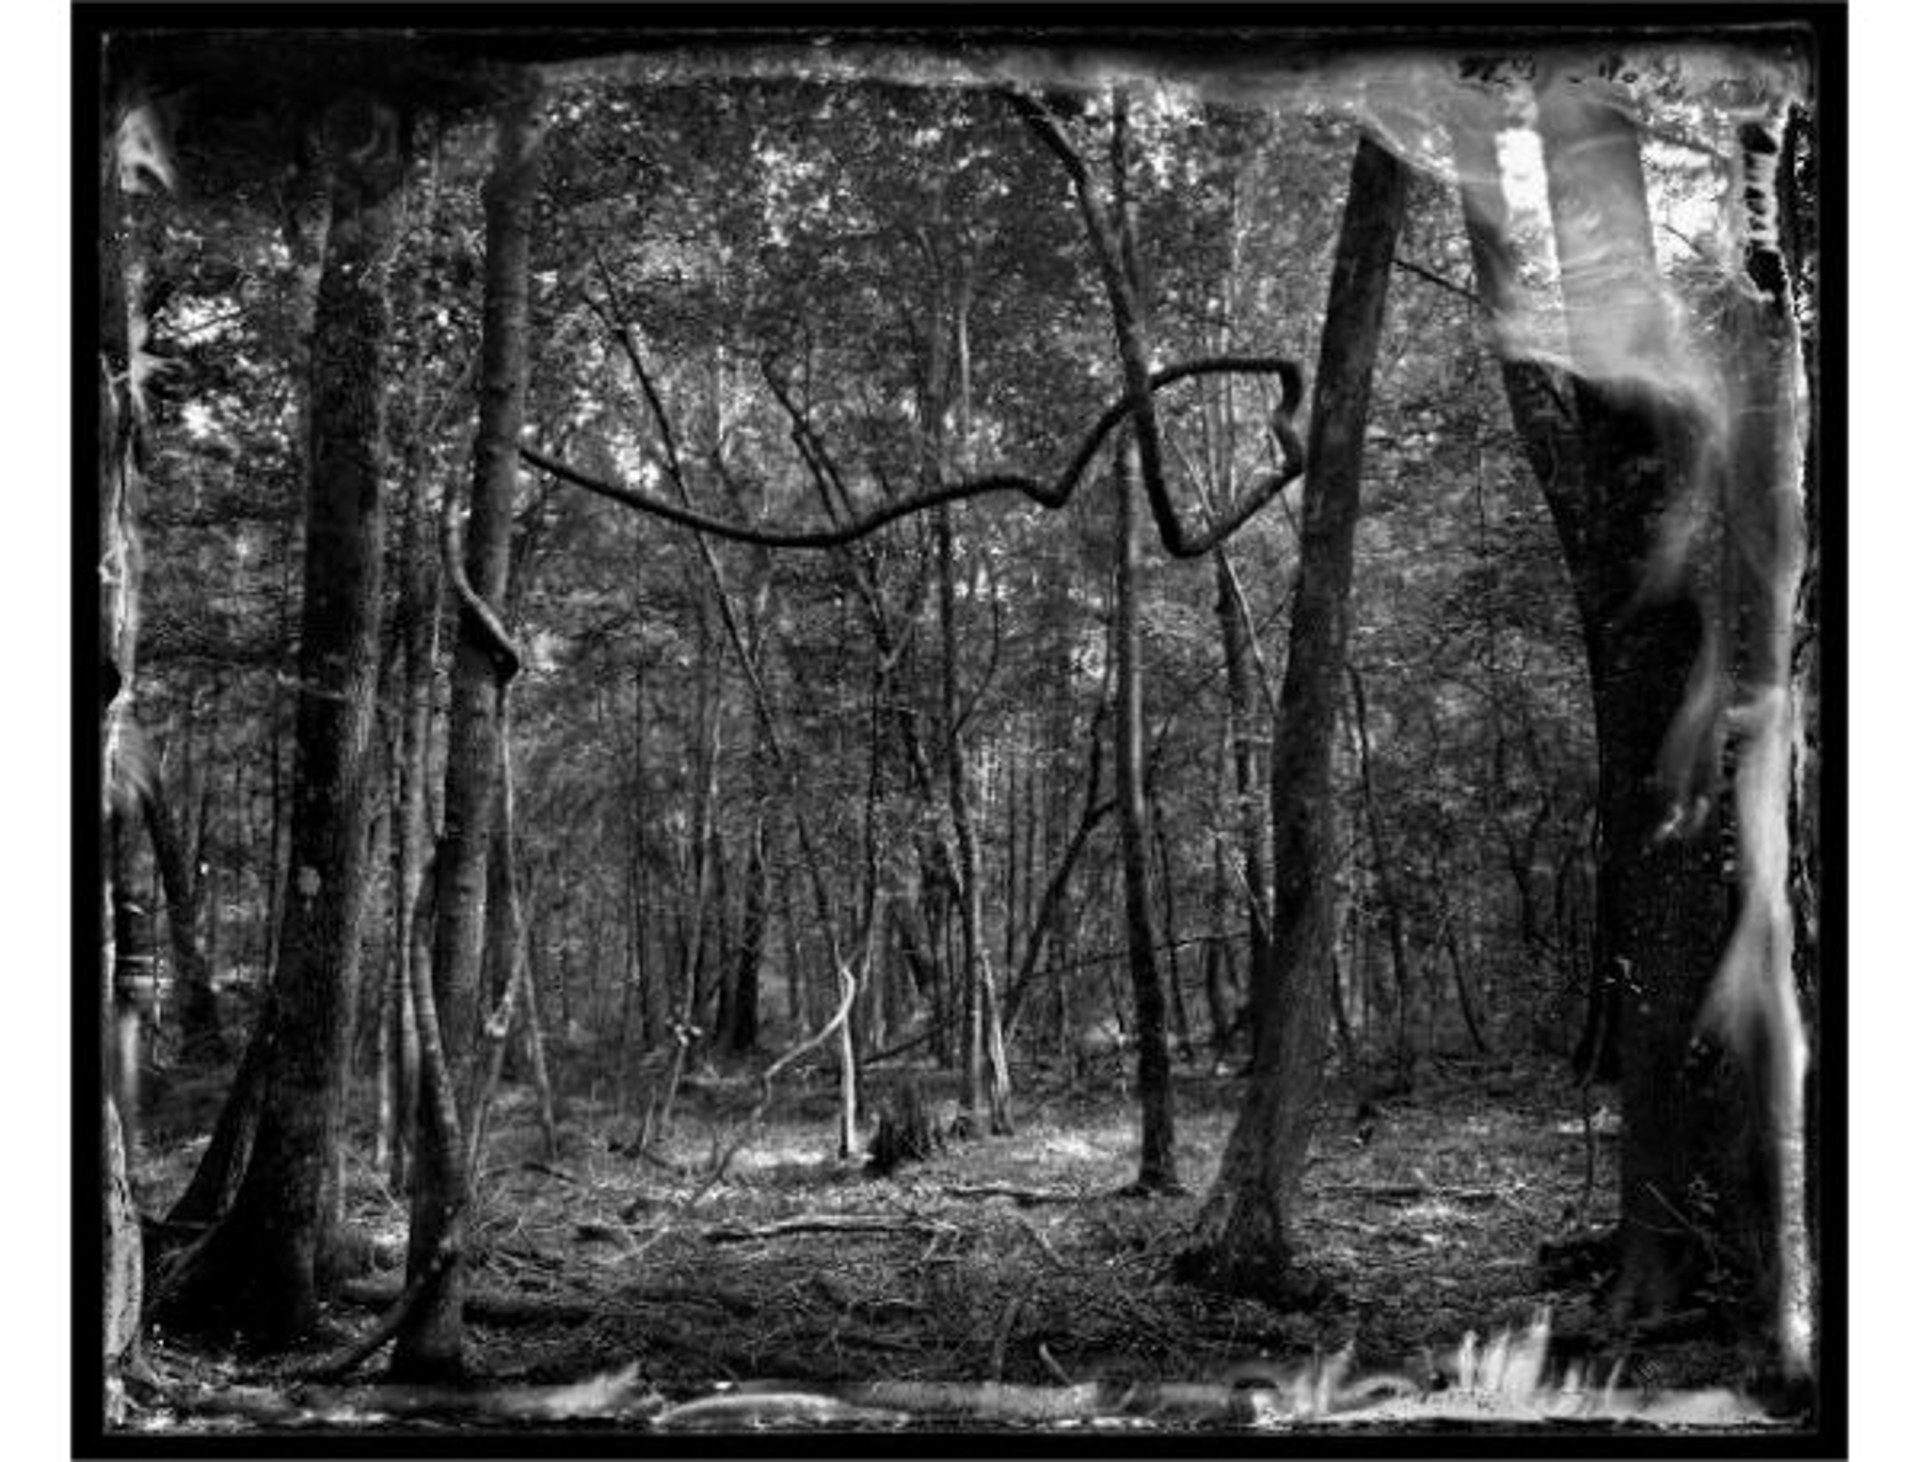 Beidler Forest by Ben Nixon